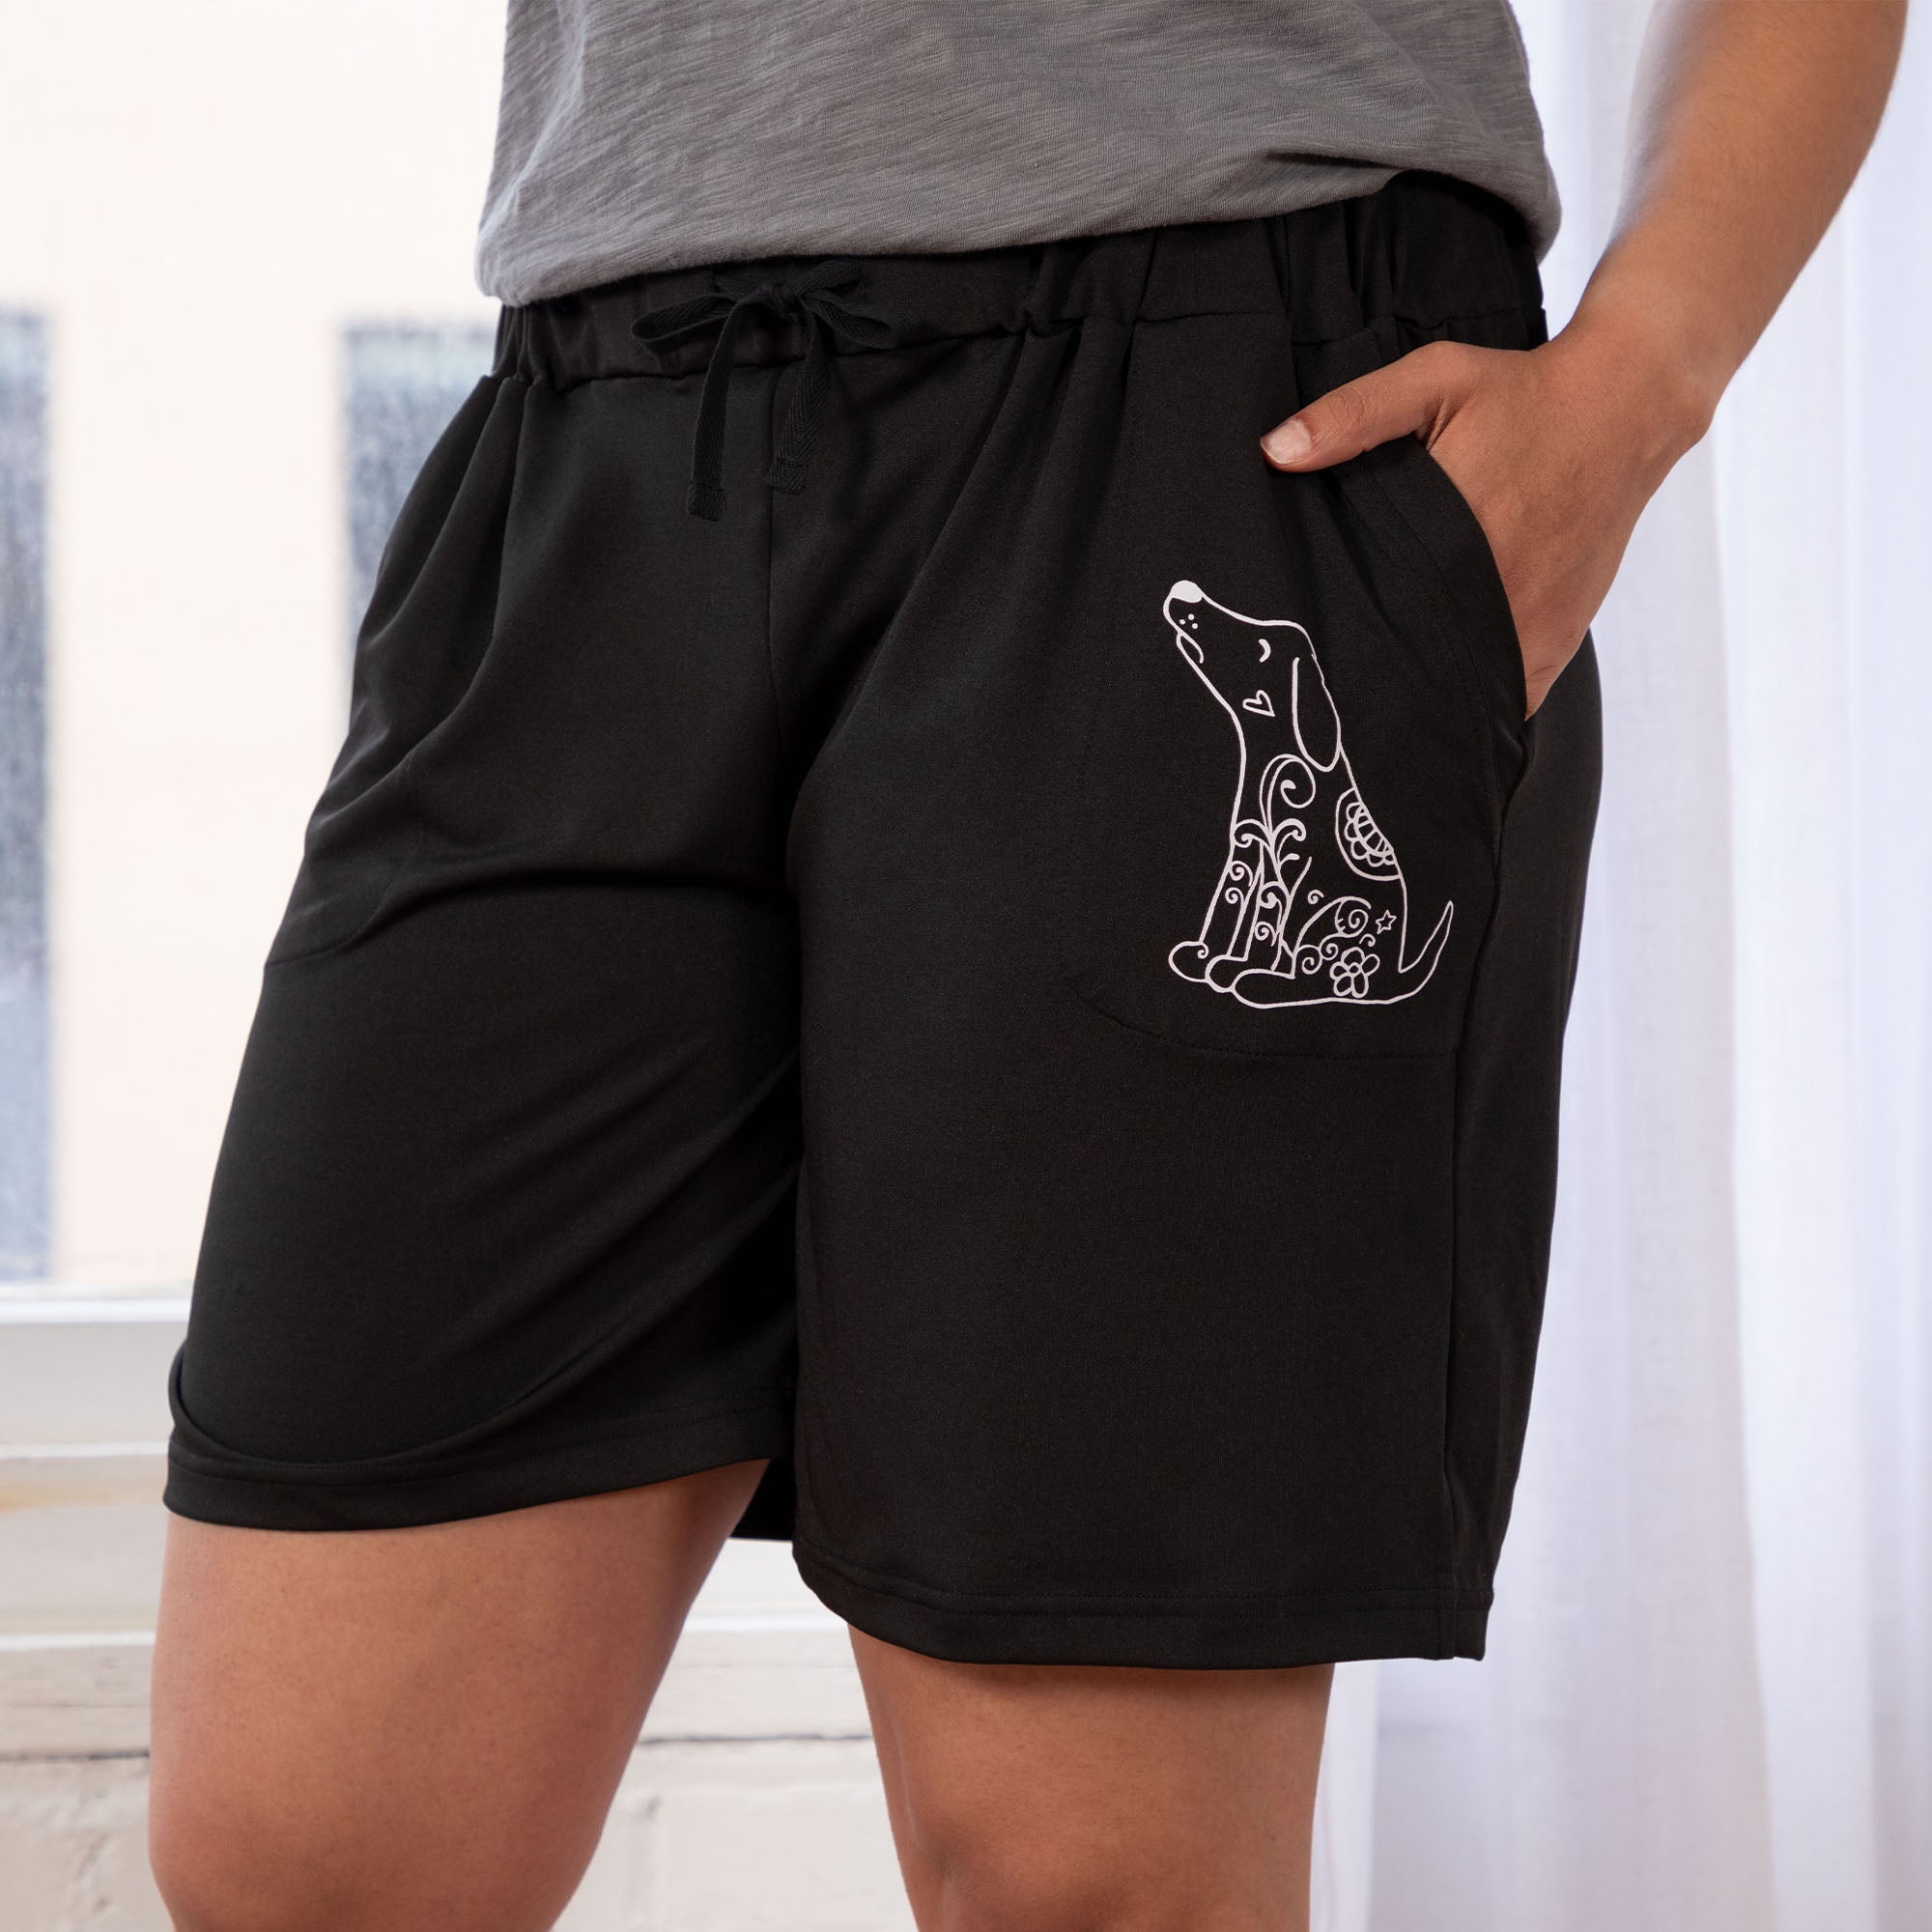 Women's Black Drawstring Paw Bermuda Shorts - Dog - XL